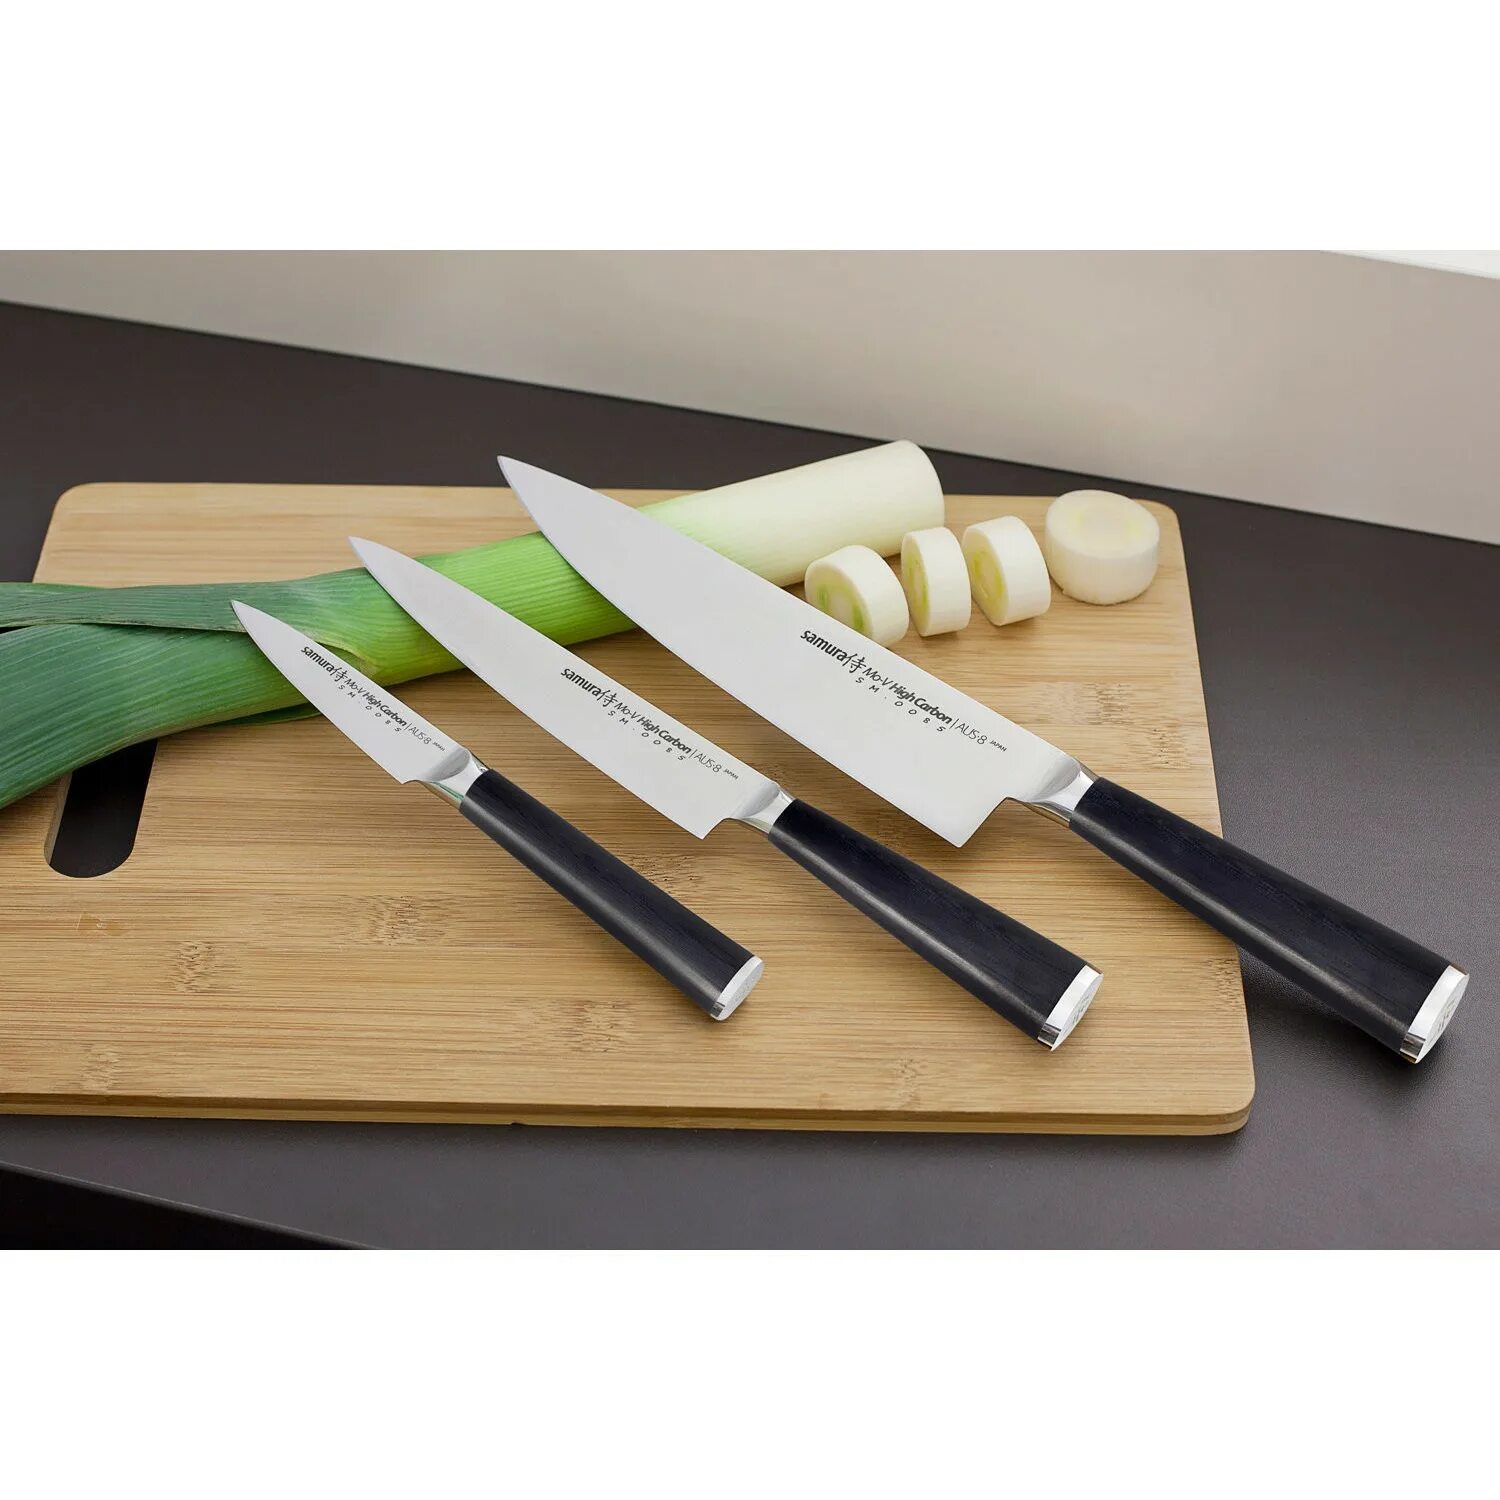 Нож для кухни купить в москве. Японские ножи Самура. Японские кухонные ножи Самура. Ножи японские кухонные Samura. Нож поварской Samura.